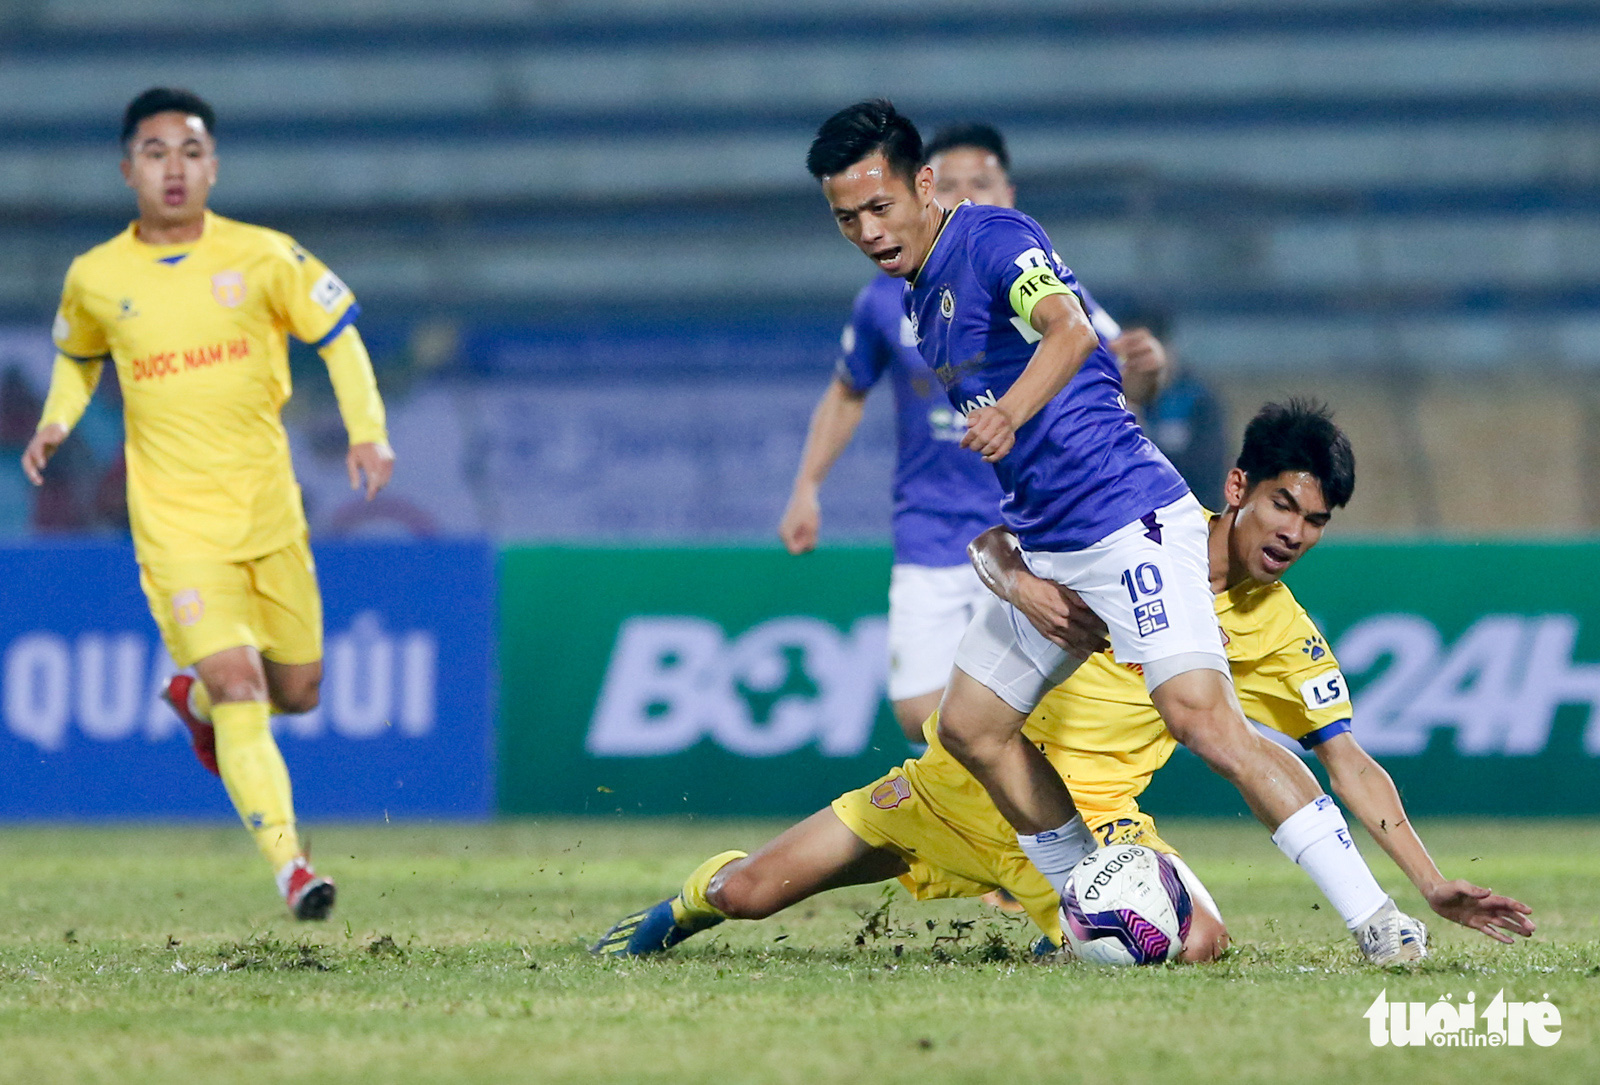 Hà Nội FC thua đau ở Nam Định vì mặt sân bị tưới nước ướt đẫm? - Ảnh 1.